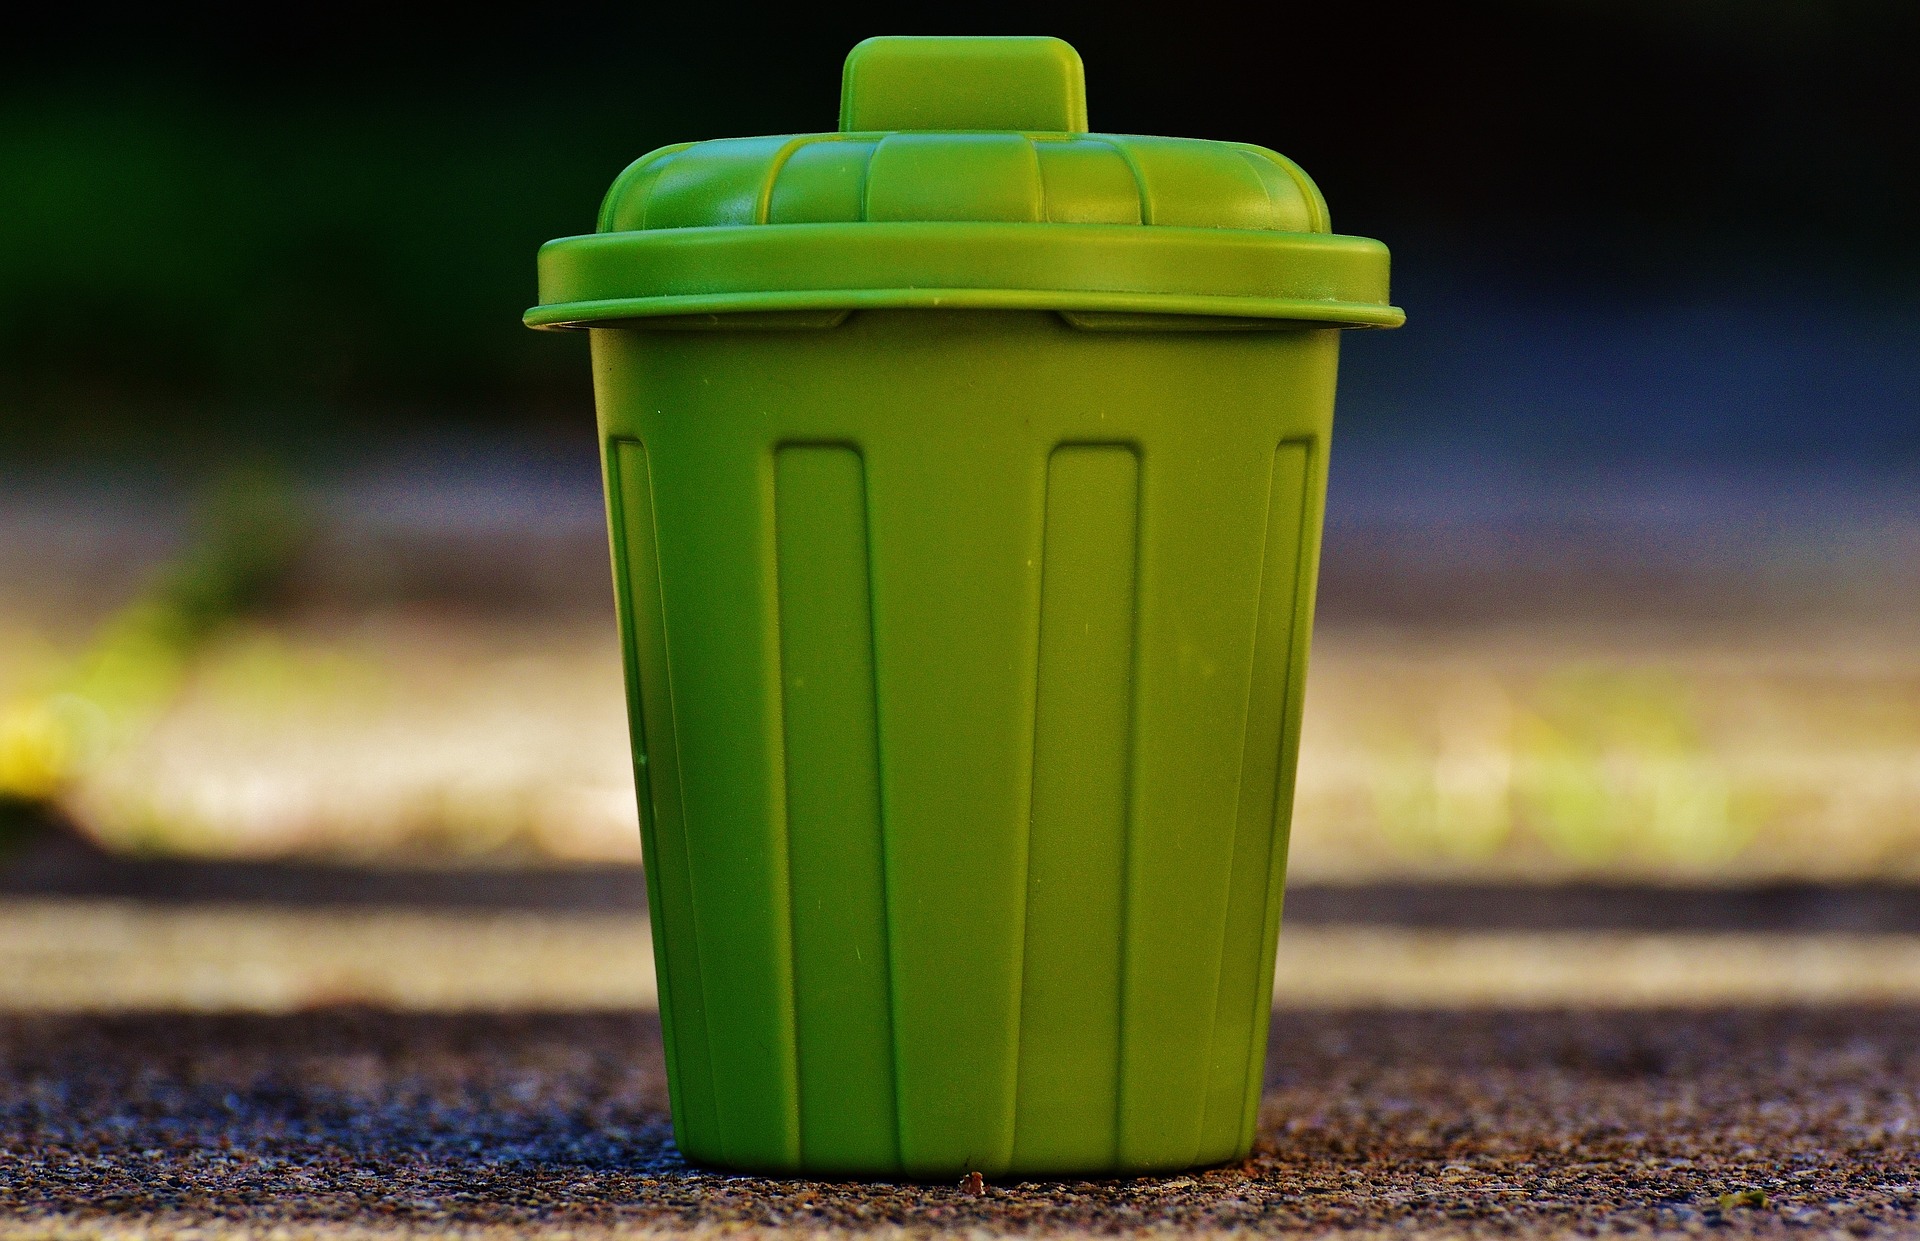 auteur smaak ga verder Groene vuilnisbak vangt meer afval - De Openbare Ruimte